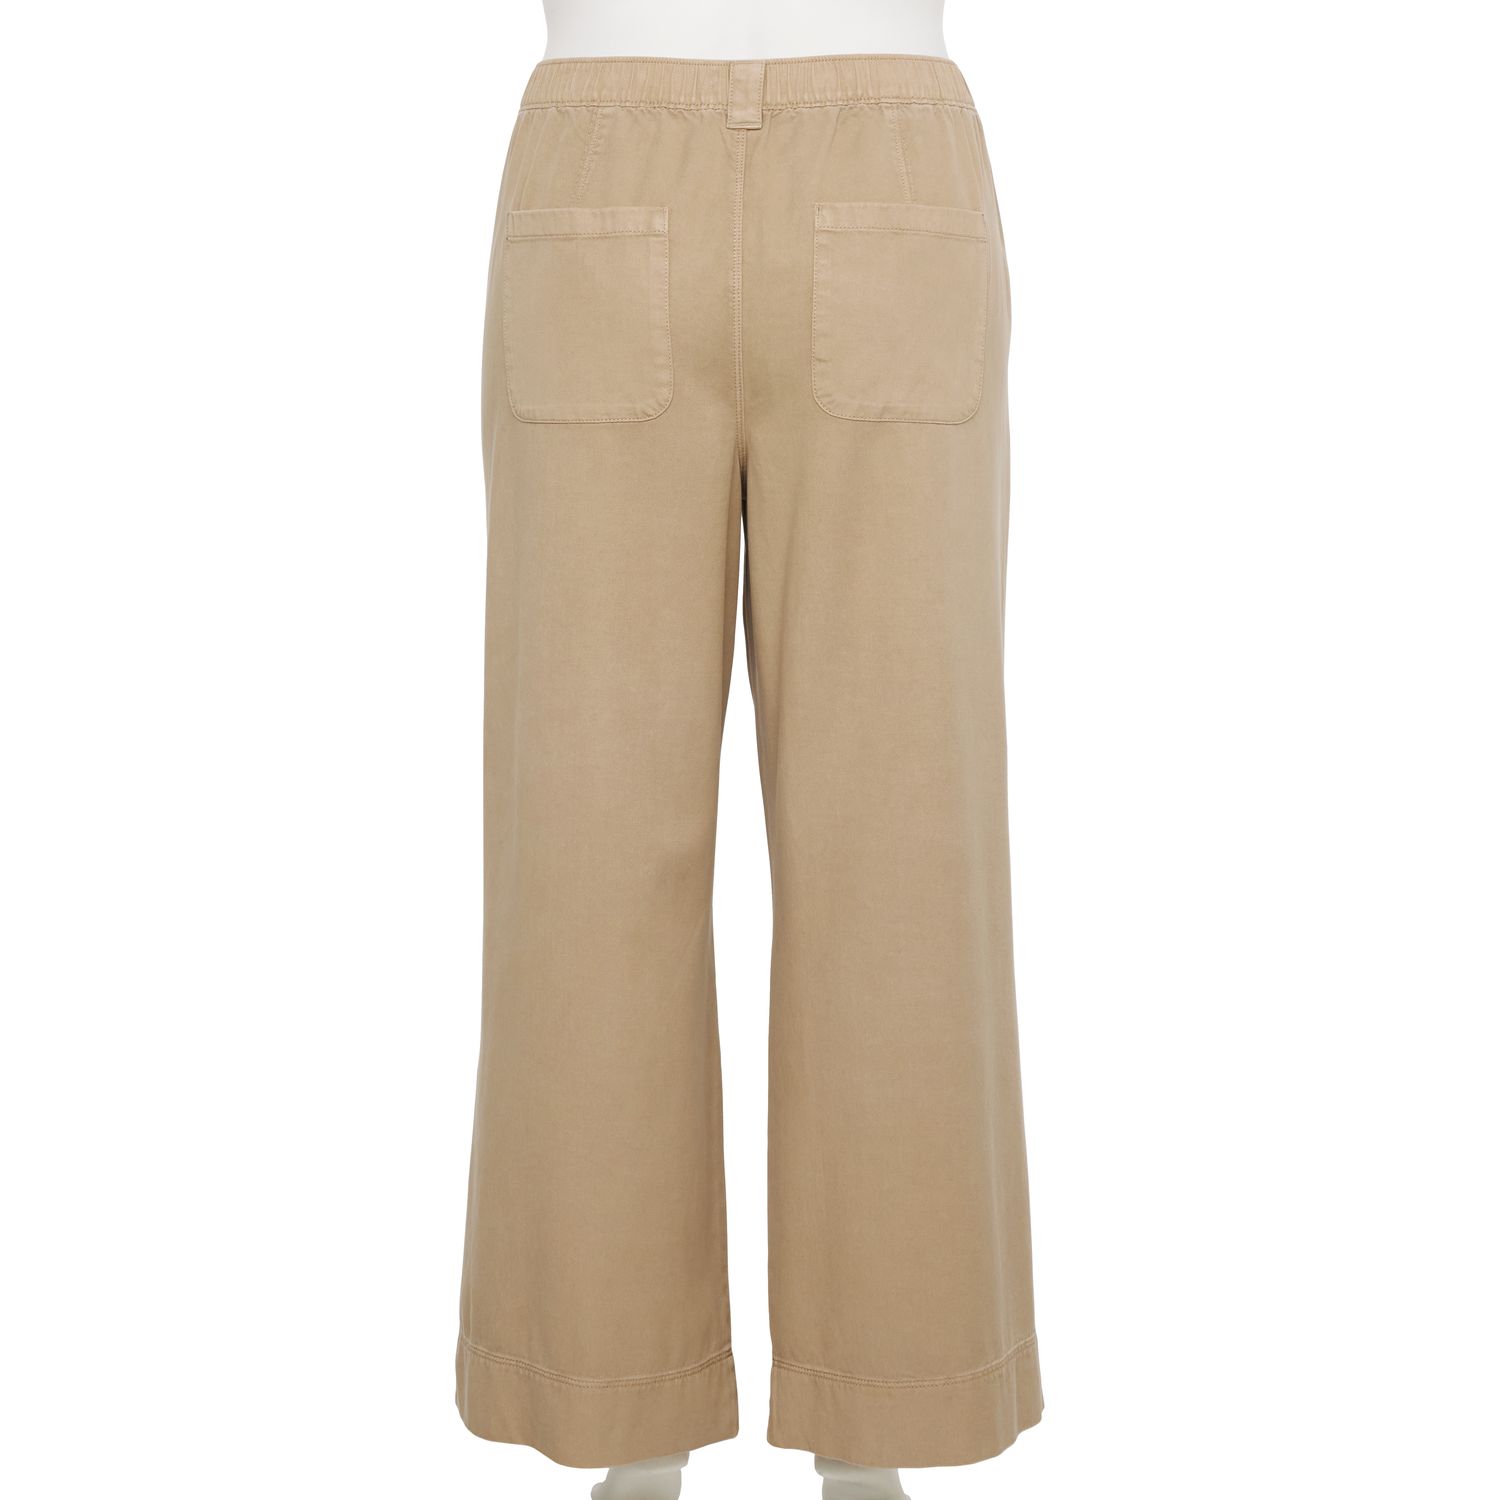 Широкие брюки со складками Sonoma Goods For Life больших размеров Sonoma Goods For Life